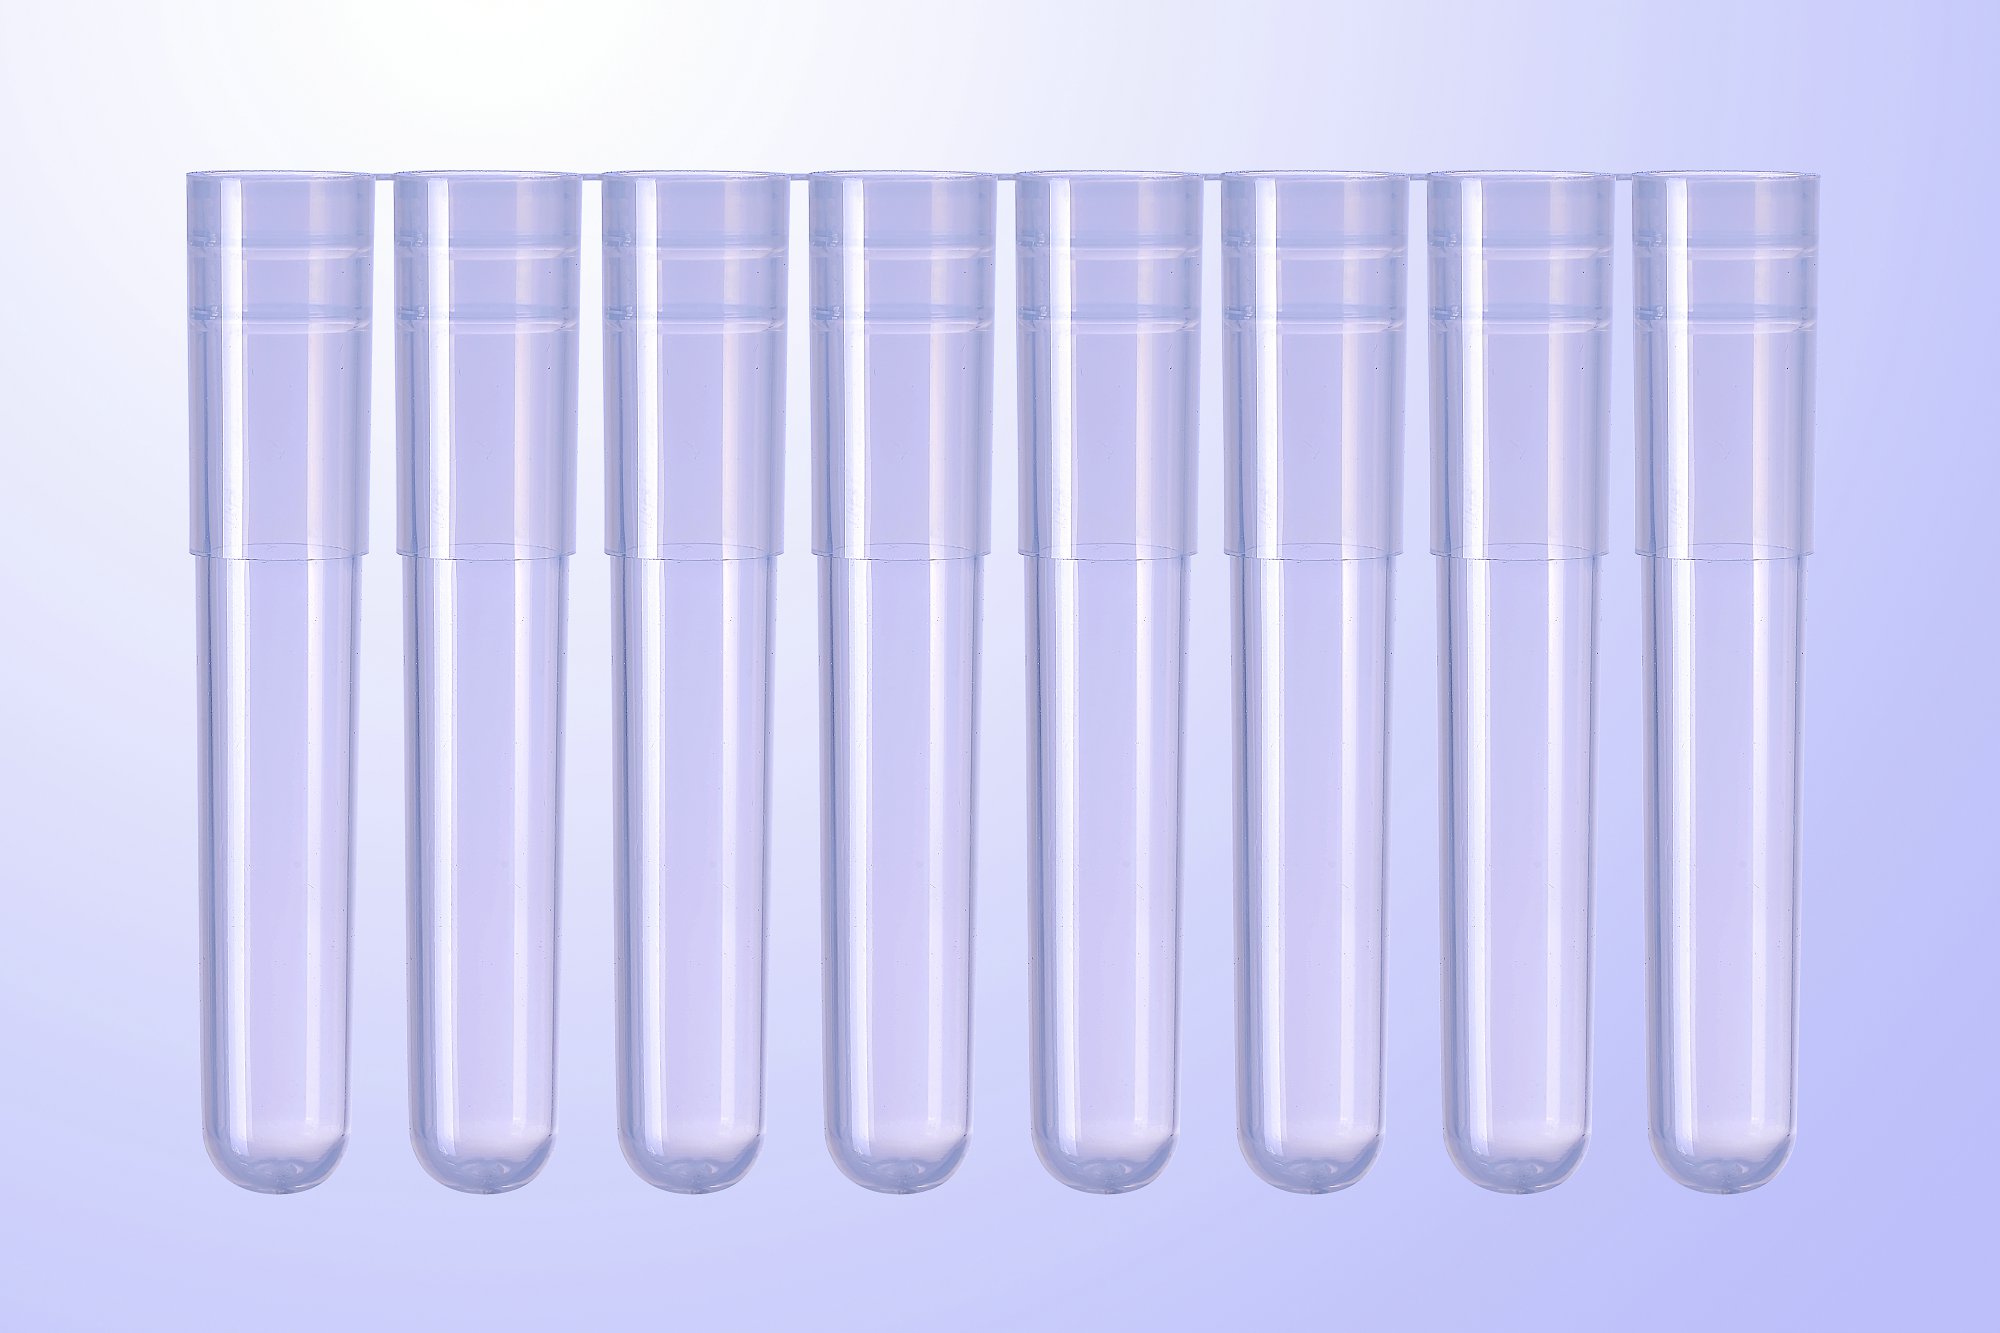 1.2ml Sample tubes